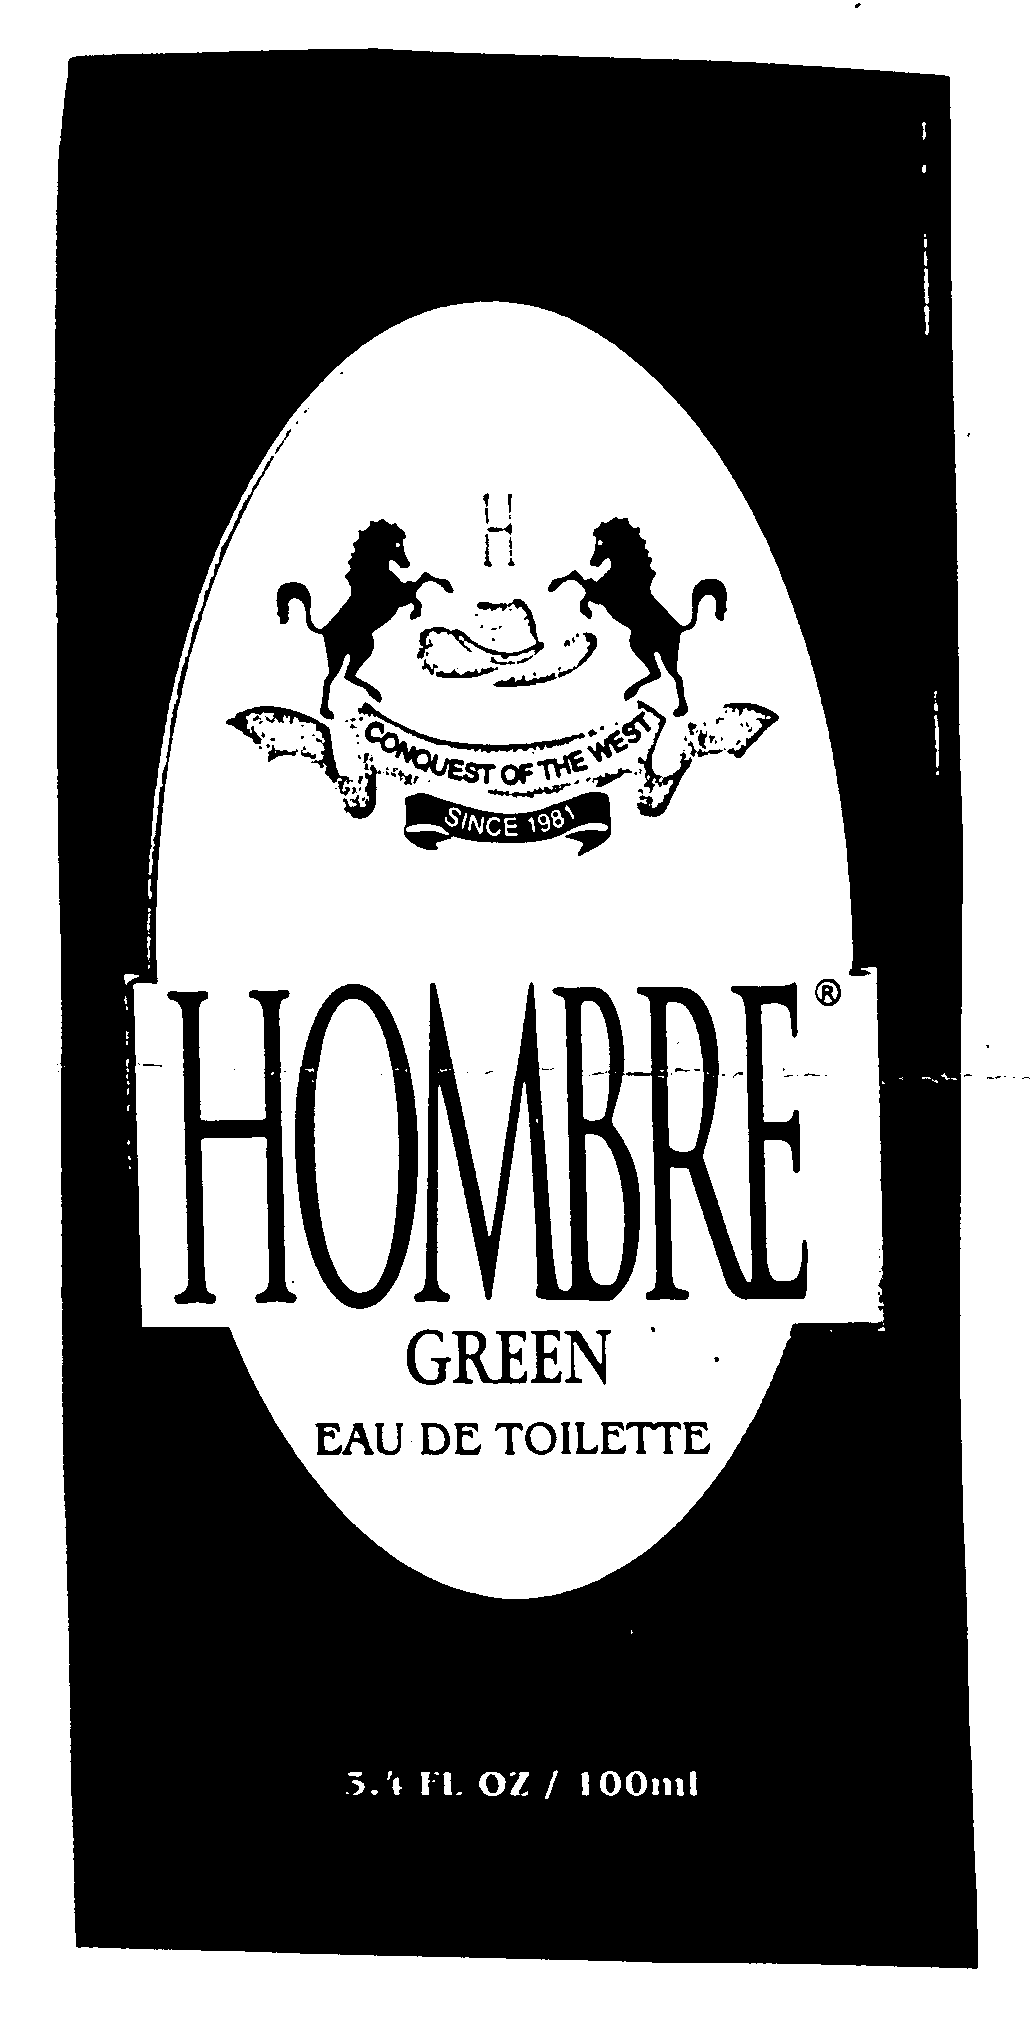  HOMBRE GREEN EAU DE TOILETTE H CONQUEST OF THE WEST SINCE 1981